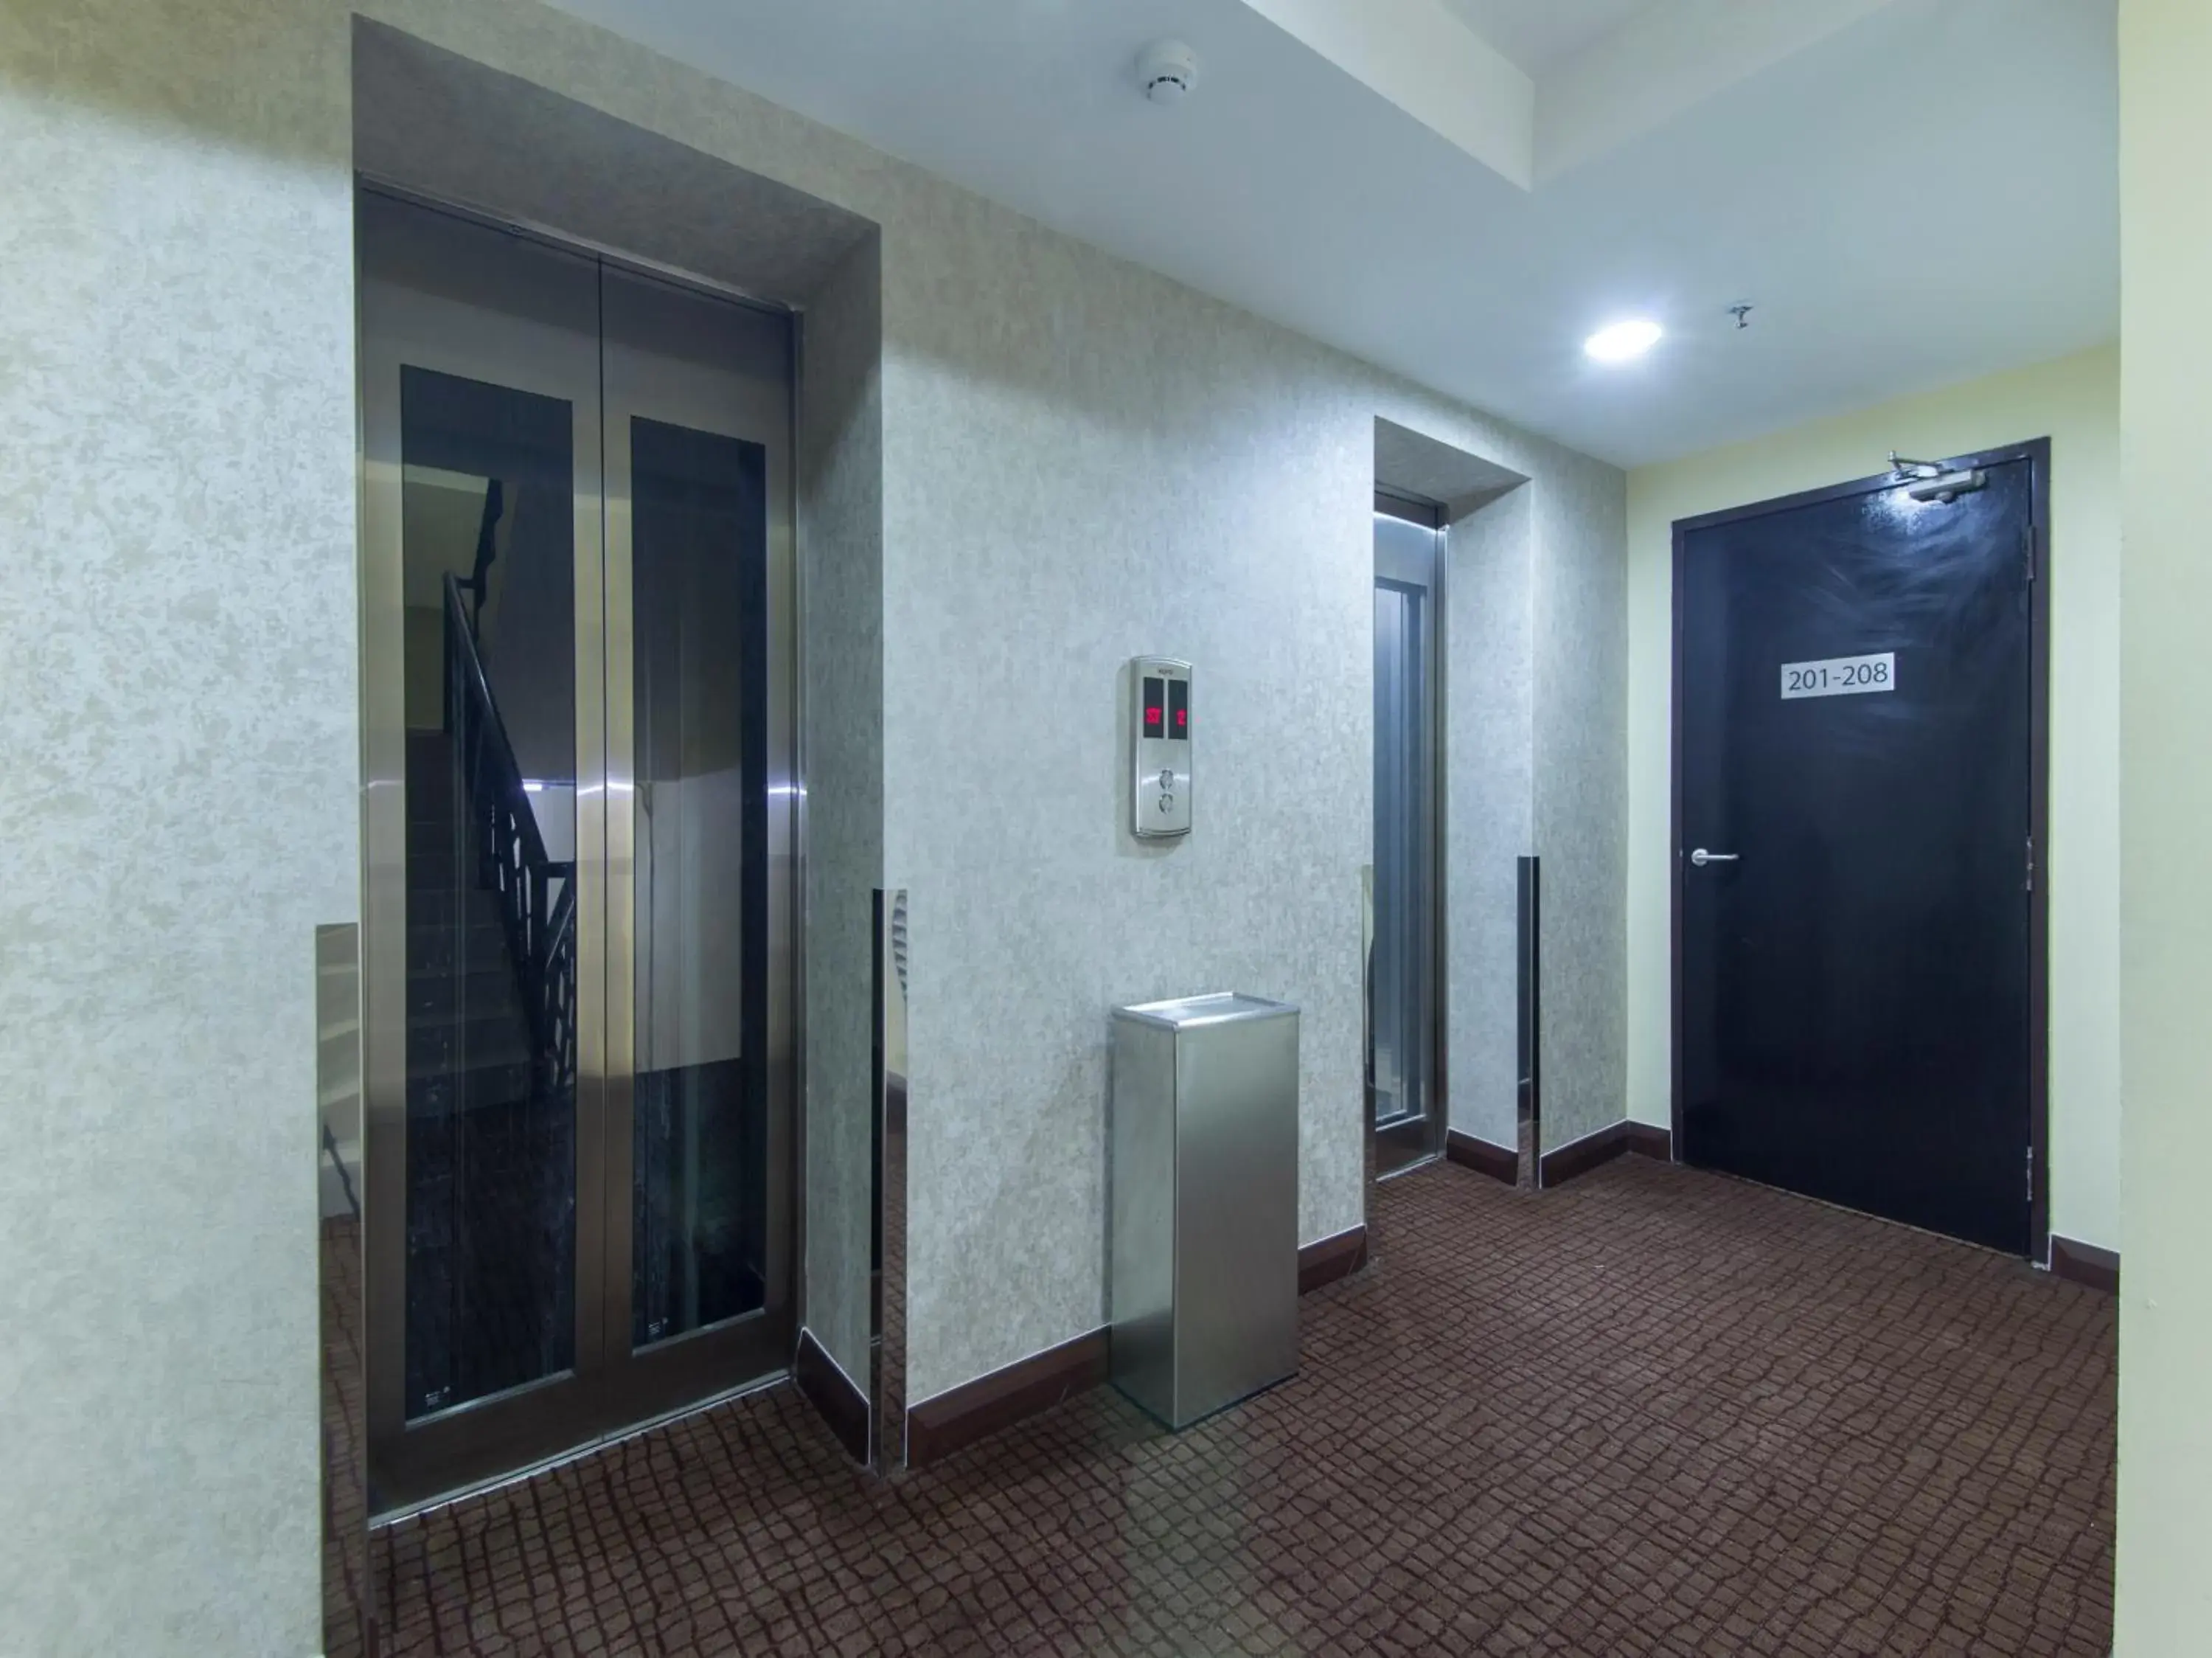 Area and facilities, Bathroom in Hotel Midaris (Syariah) Kuala Lumpur